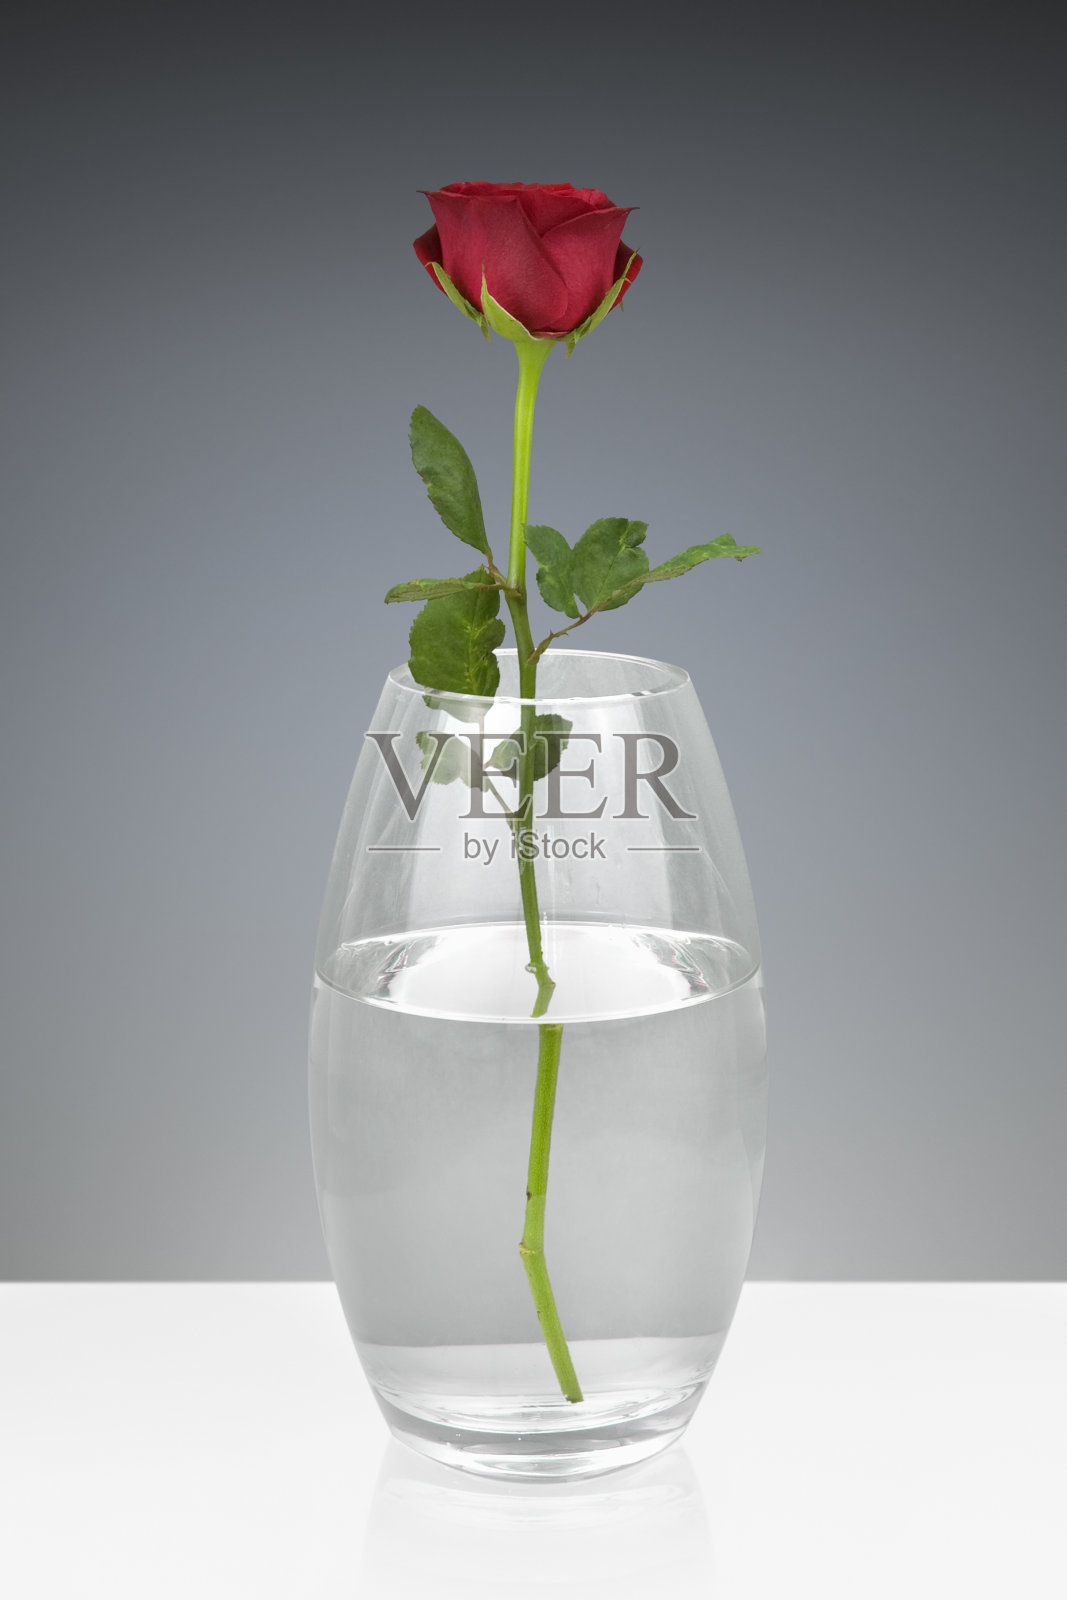 单朵红玫瑰插在玻璃花瓶里照片摄影图片